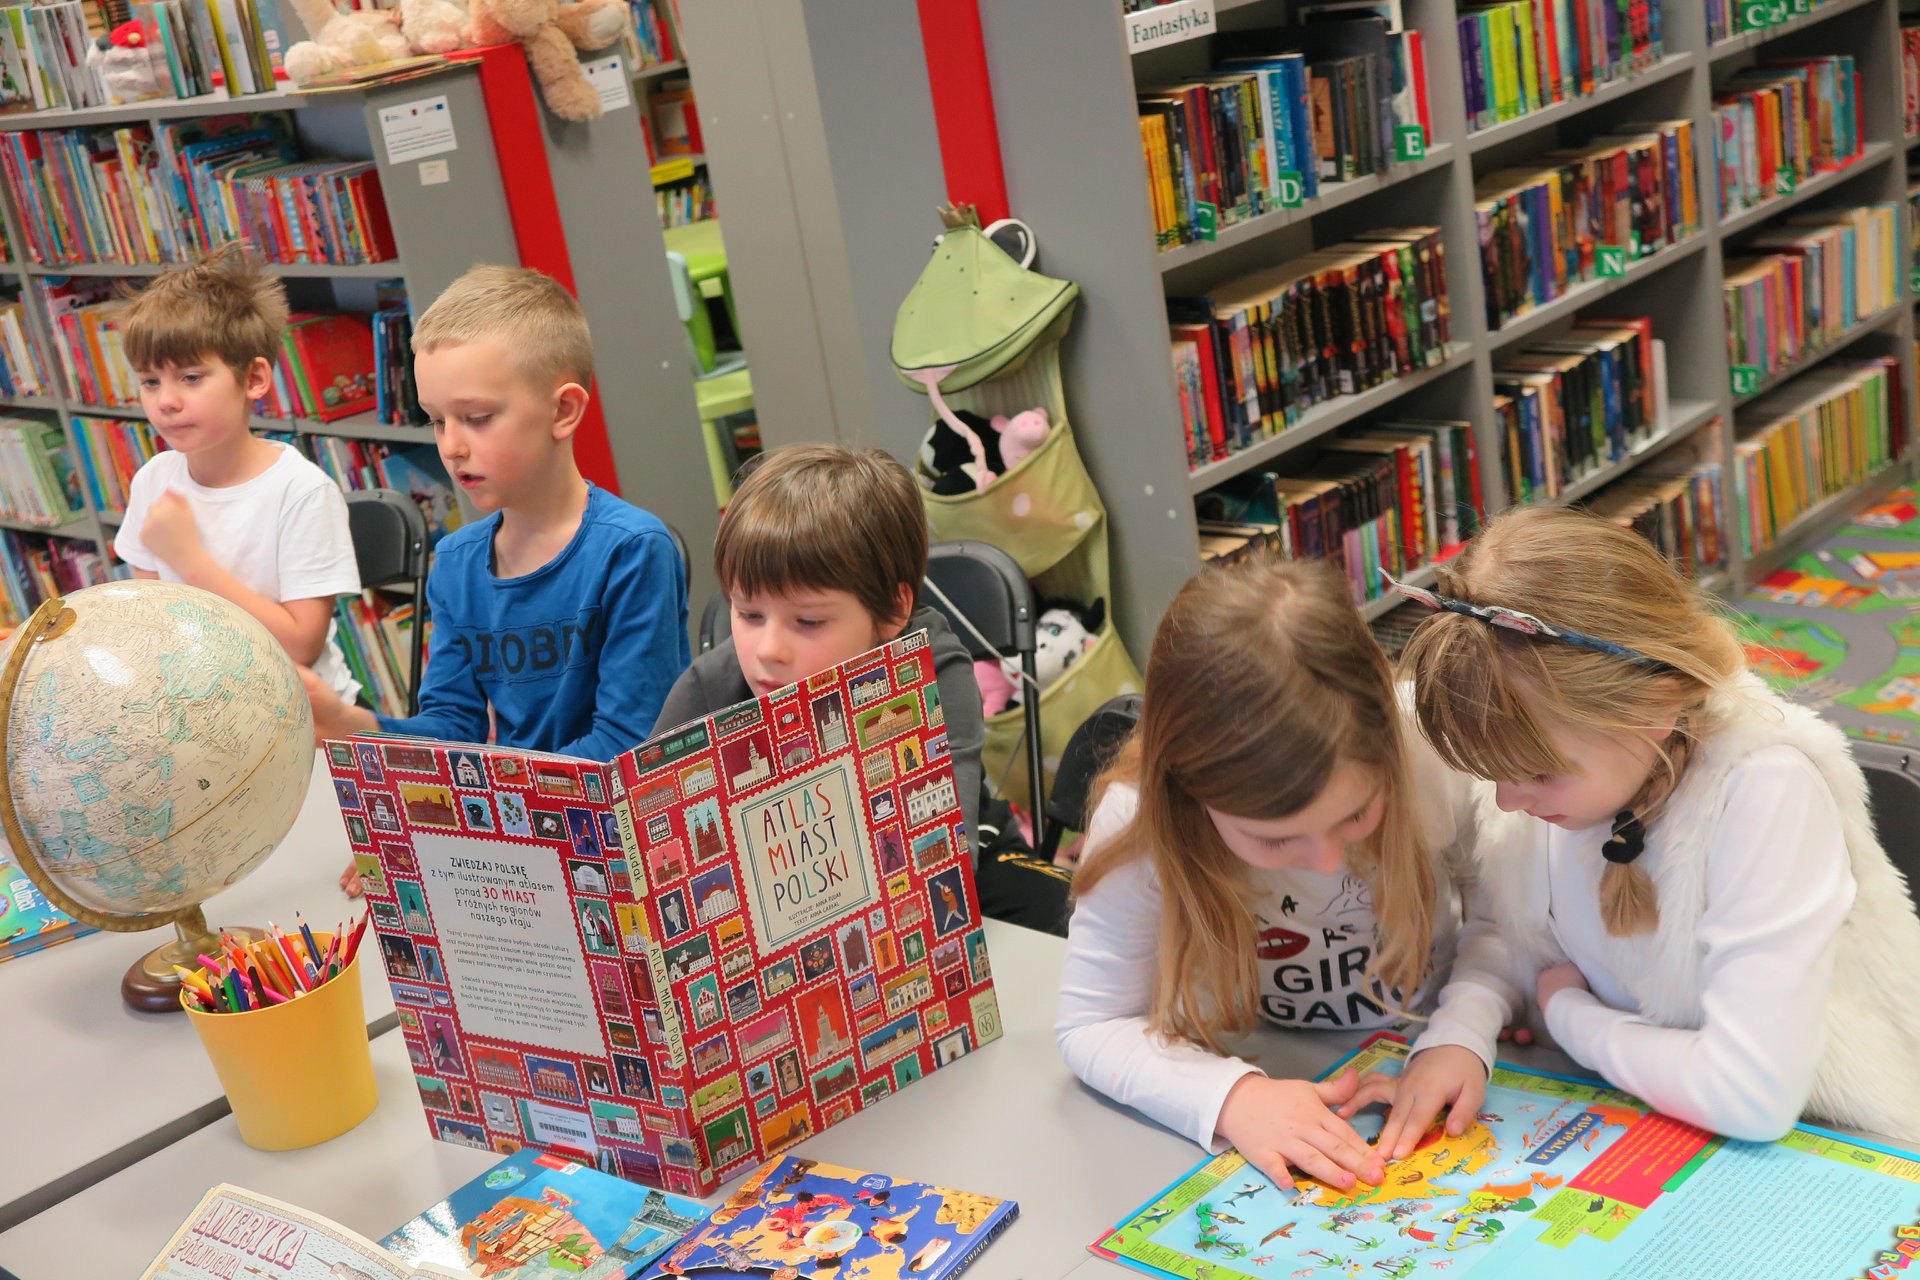 Wnętrze biblioteki (Klub Malucha) warsztaty geograficzne, przy stoliku pięcioro dzieci, chłopiec ogląda atlas miast Polski, dziewczynko obok oglądają mape